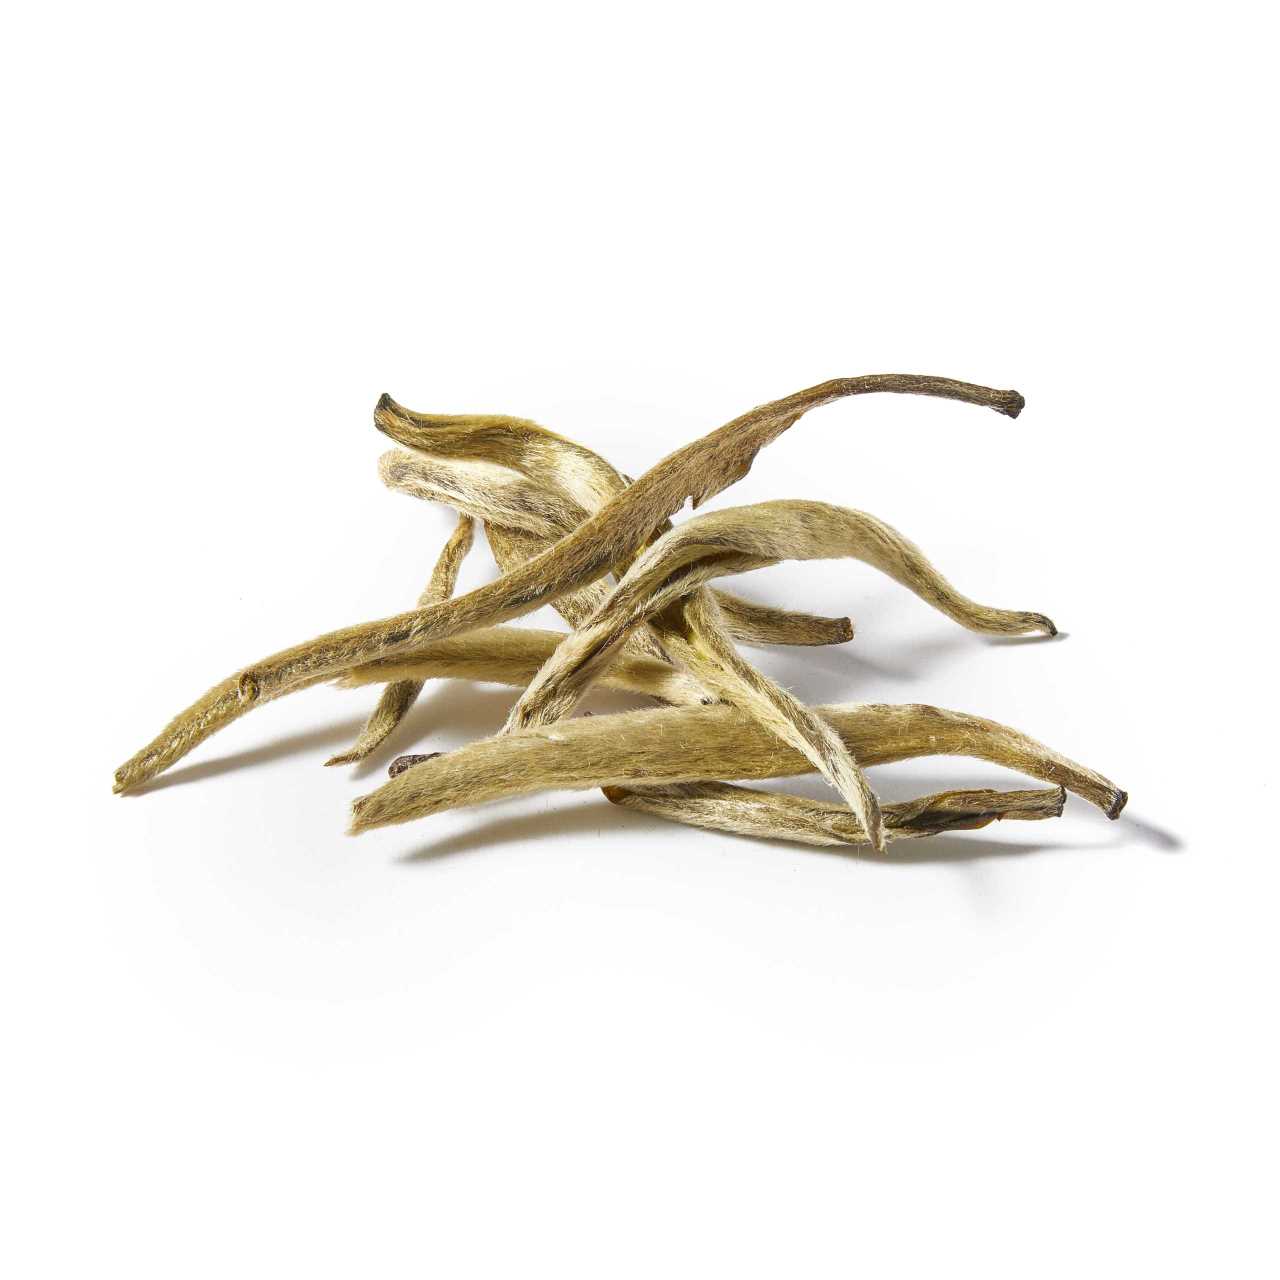 A macro pile of Jasmine Silver Needle Loose Leaf tea